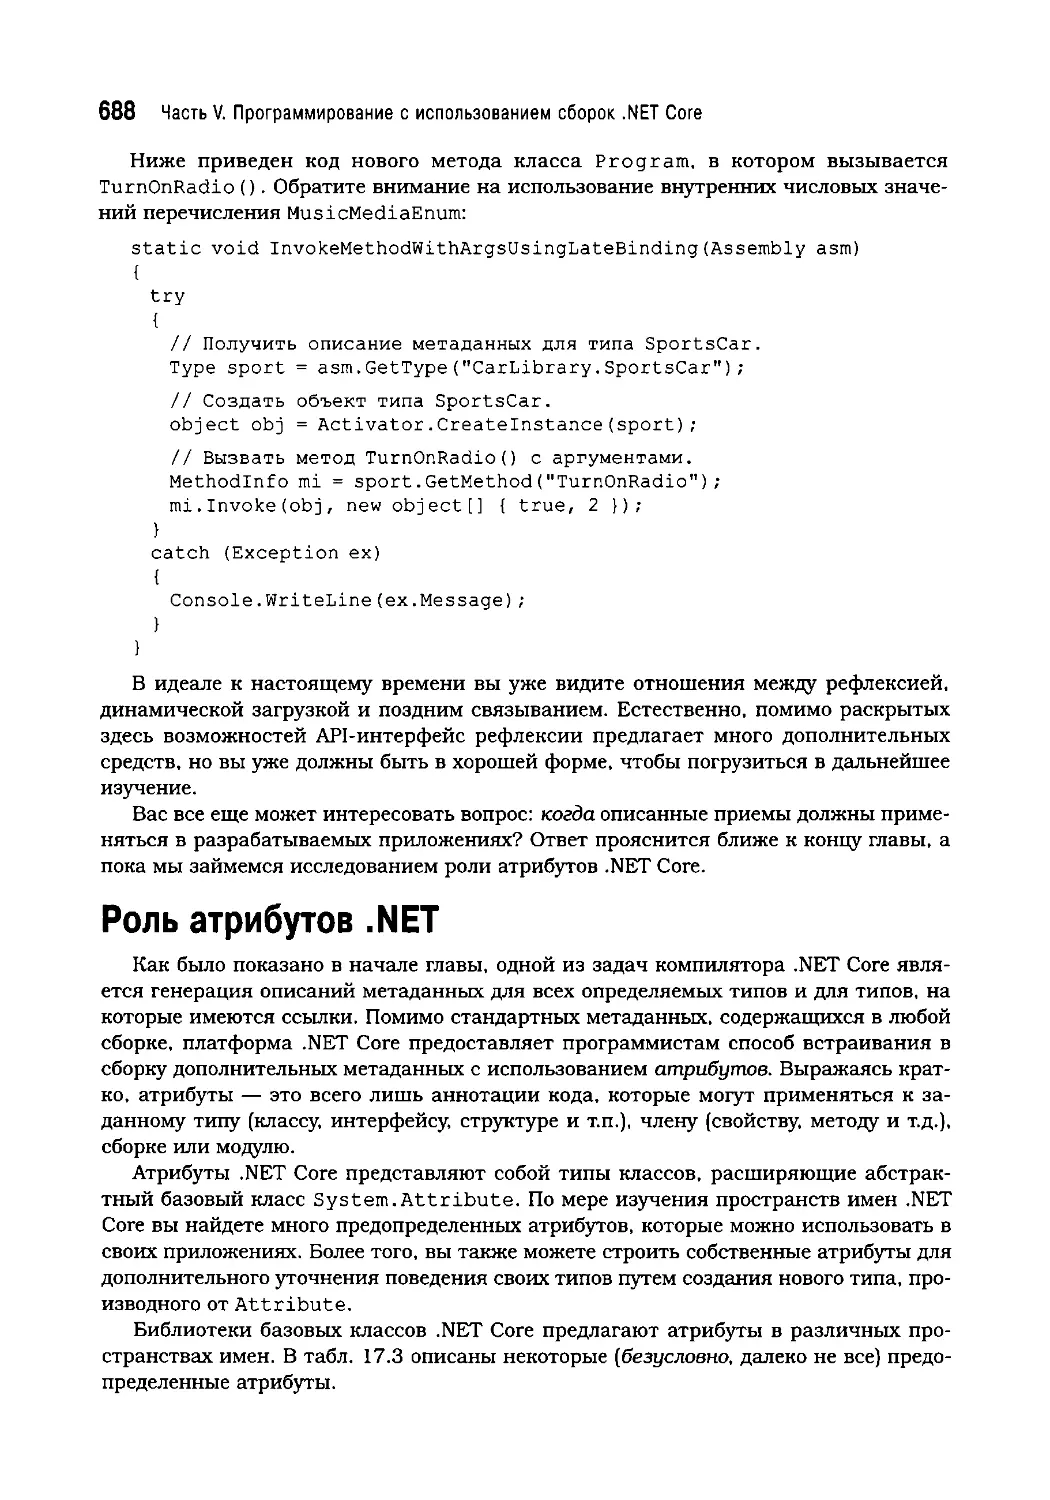 Роль атрибутов .NET